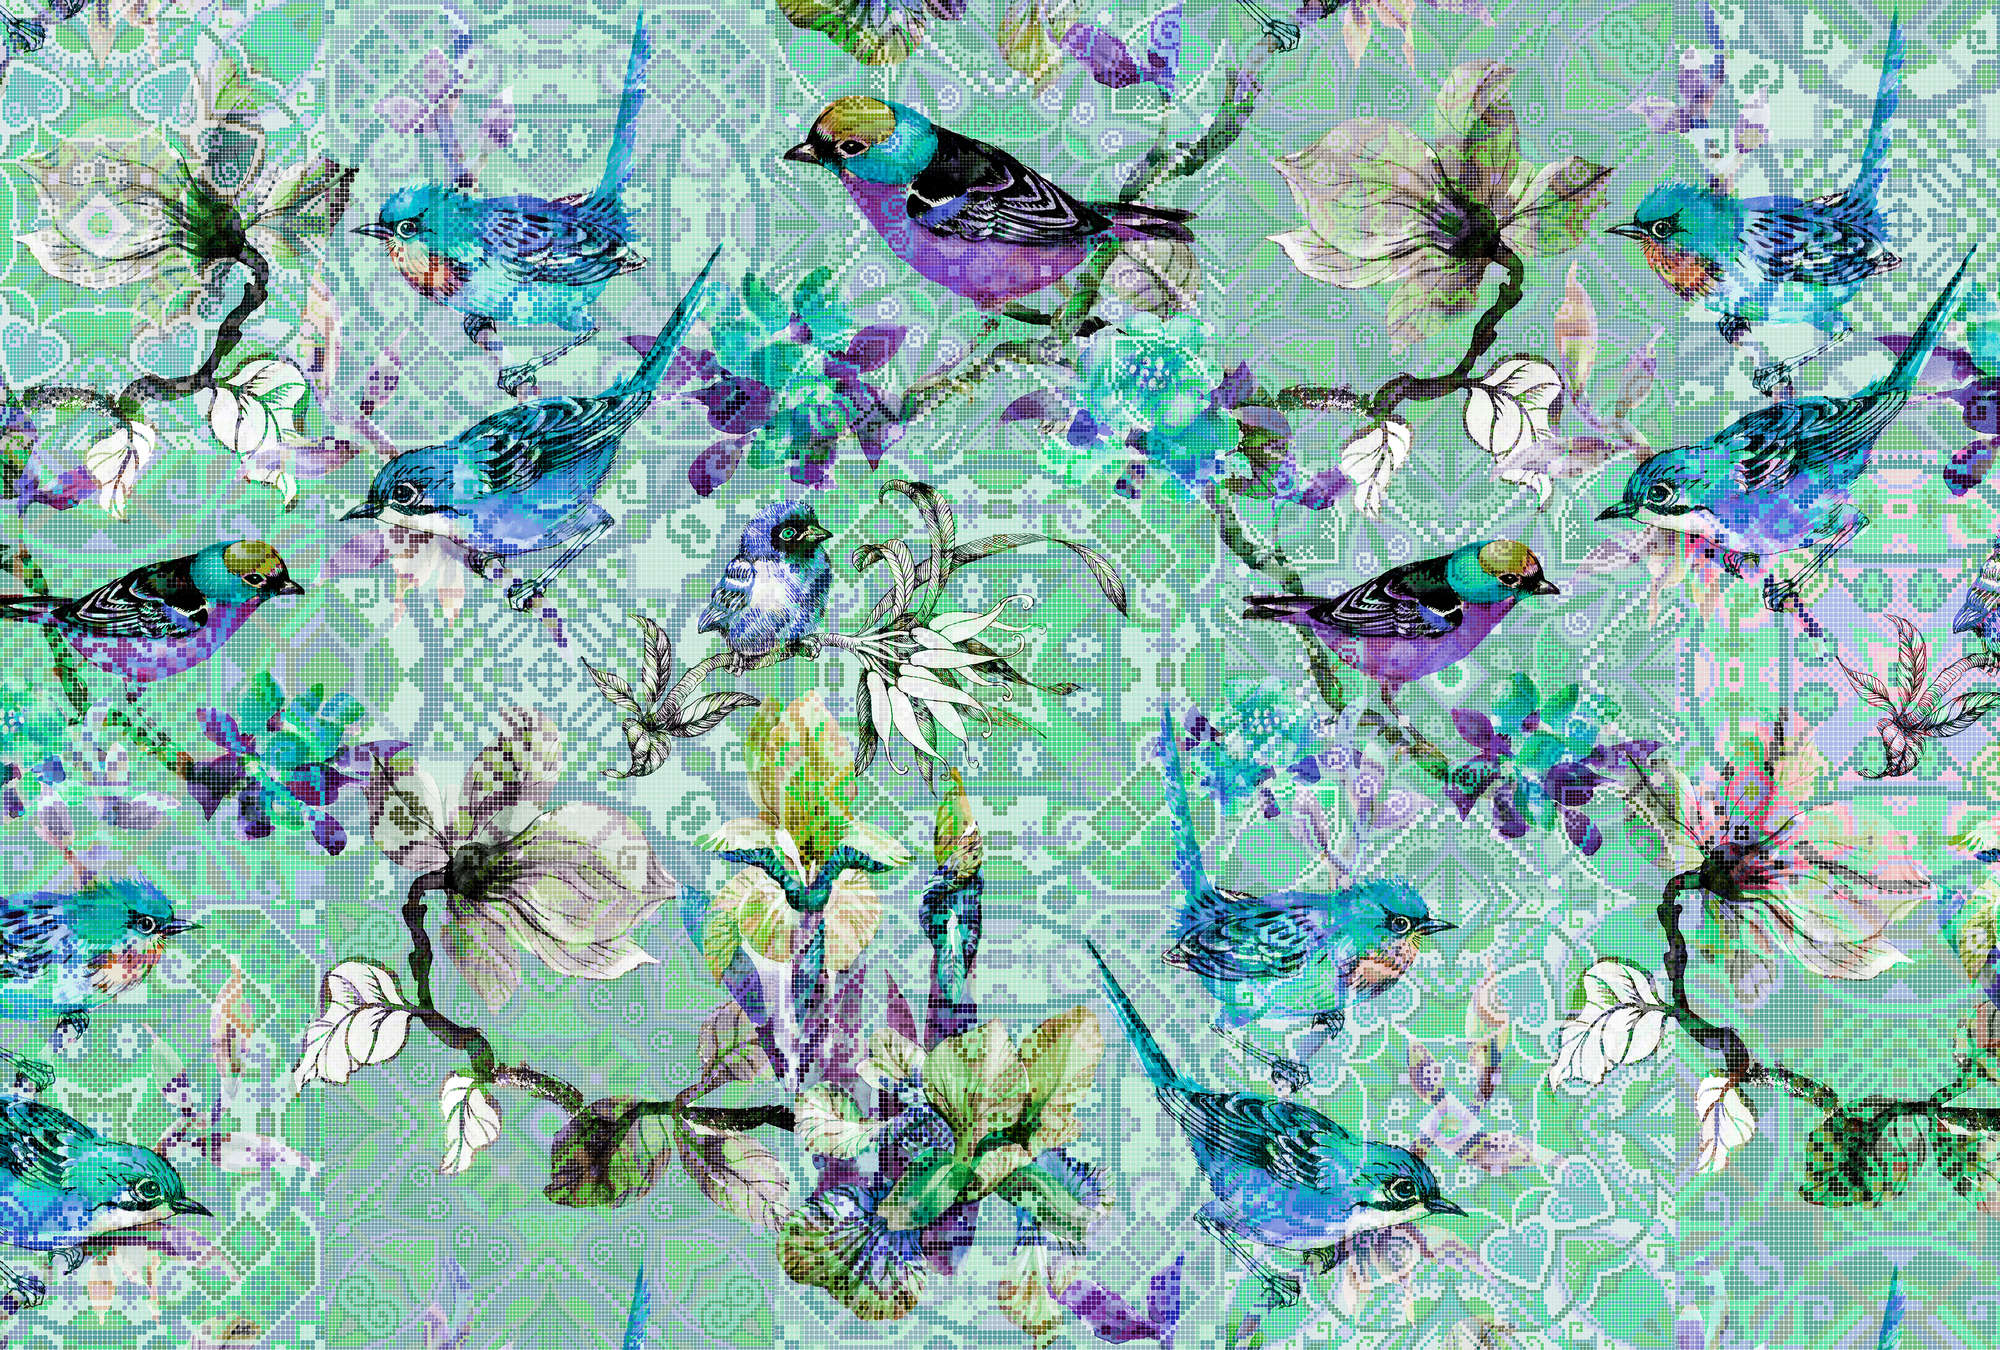             Vogelbehang met mozaïekpatroon - Walls by Patel
        